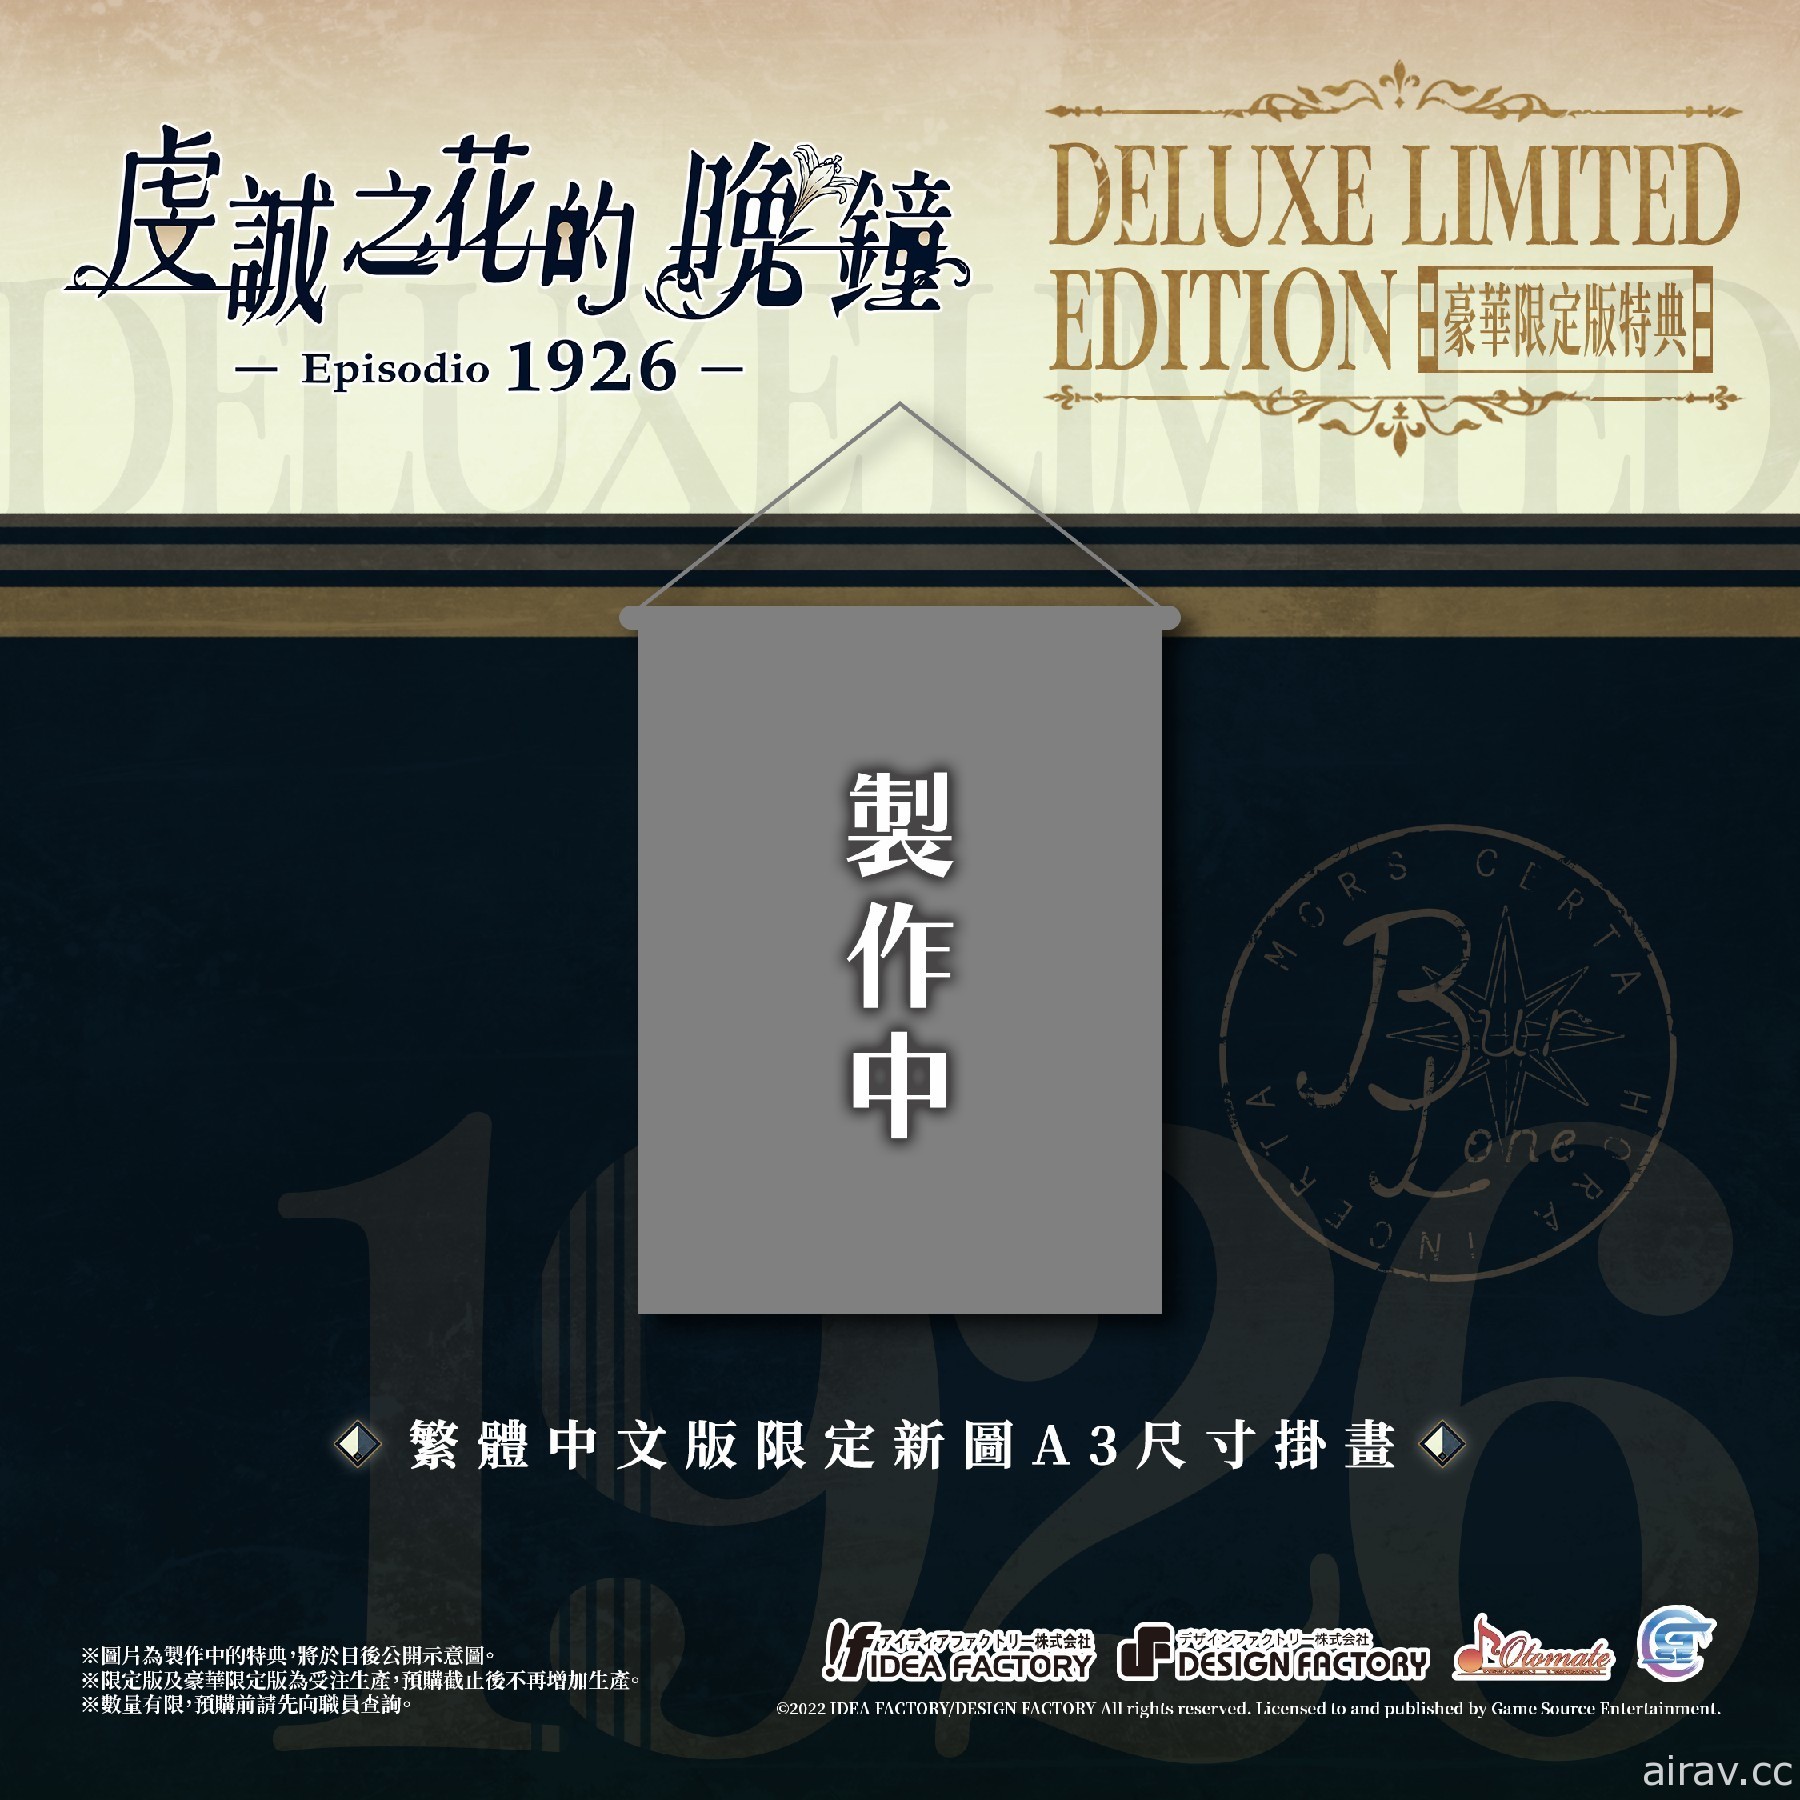 《虔誠之花的晚鐘 Episodio 1926》公開追加特典情報 將設計繁體中文版限定封面